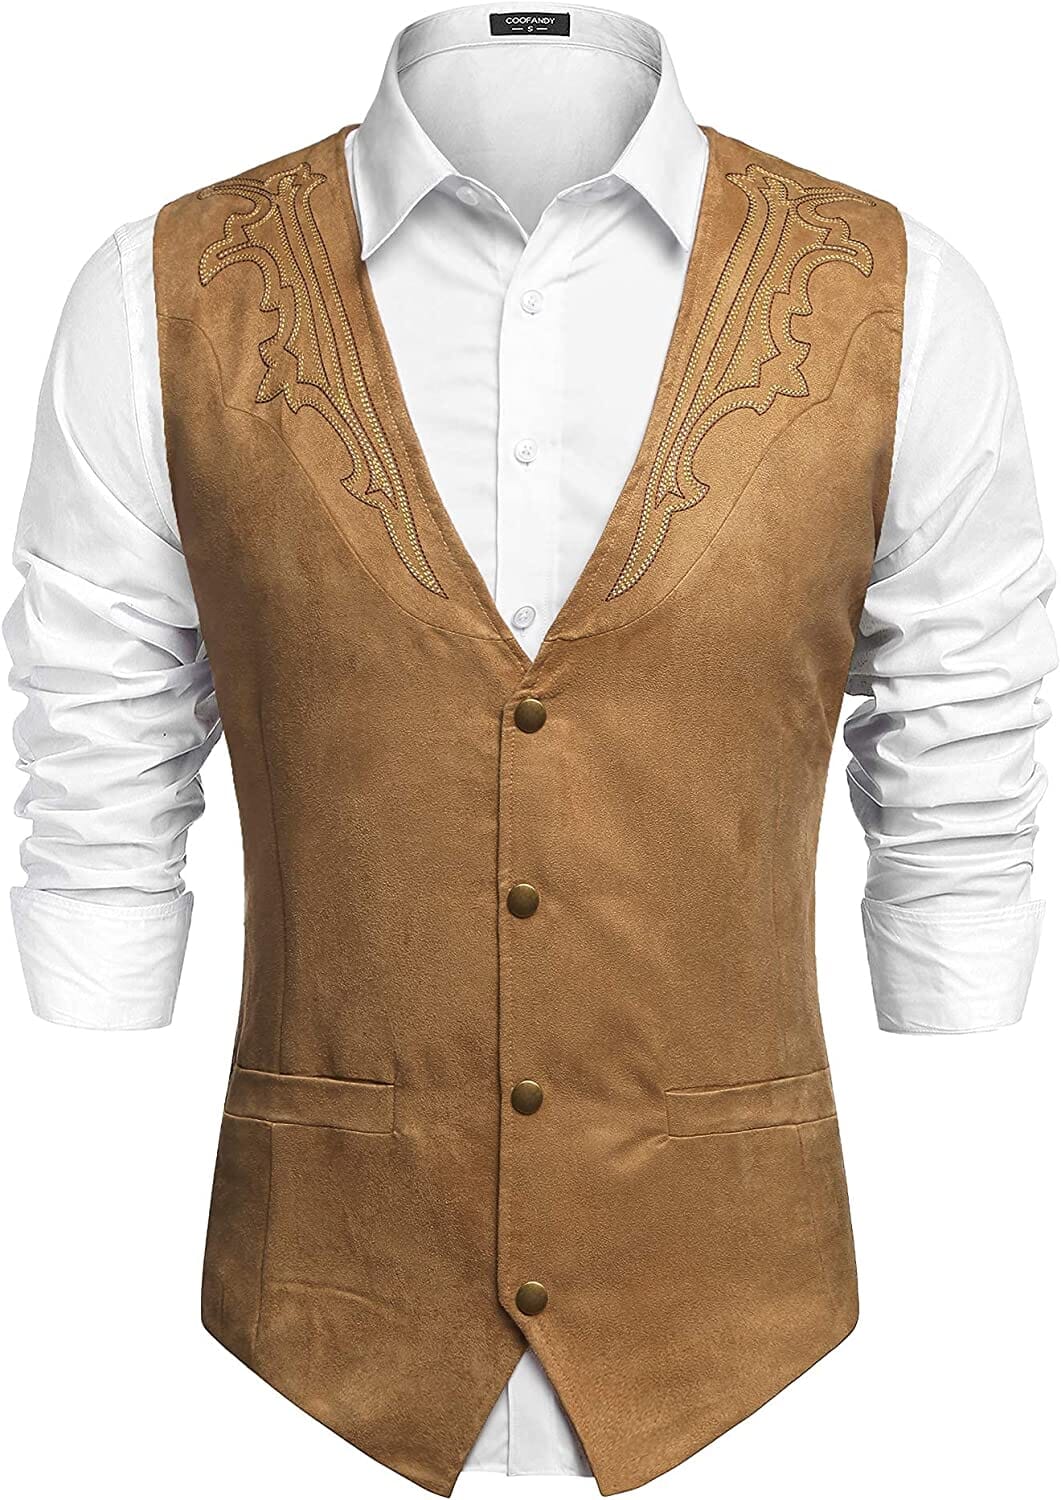 Western Suede Leather Vest Suit (US Only) Vest Coofandy's Khaki S 